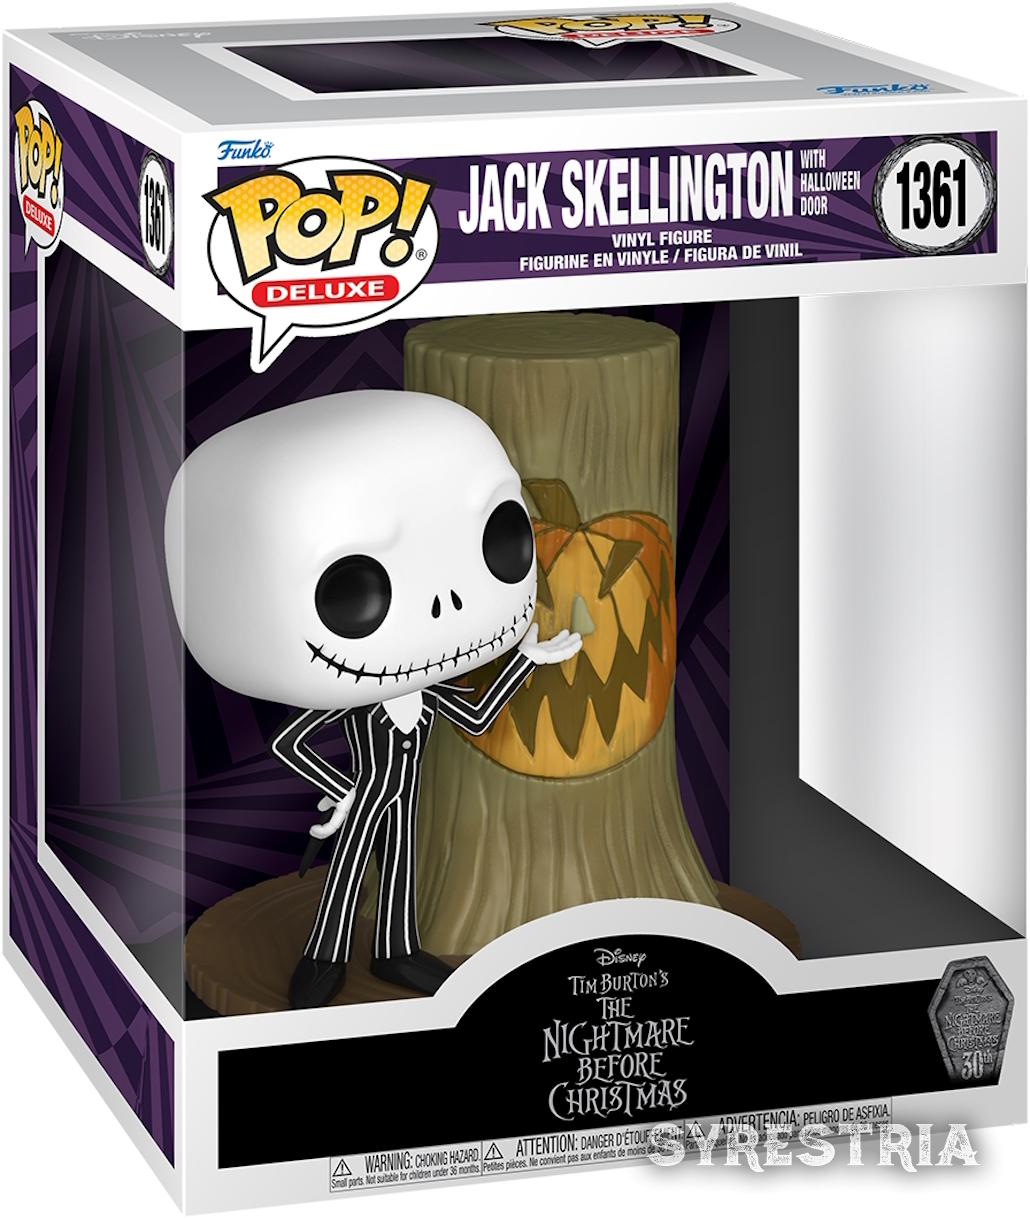 Nightmare Before Christmas - Jack Skellington with Halloween Door 1361  - Funko Pop! Deluxe